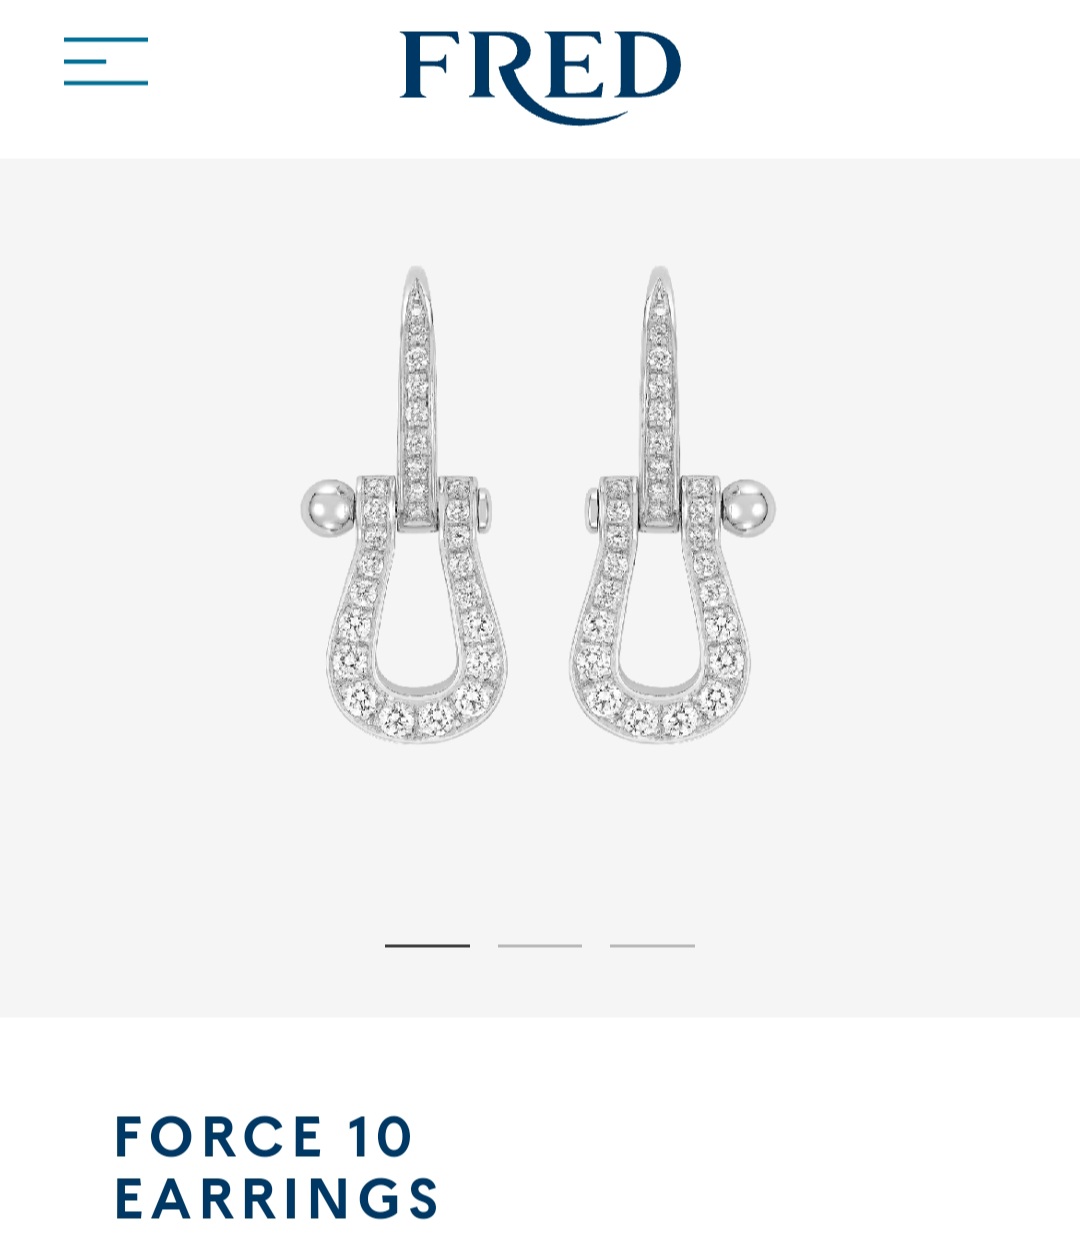 Fred Force 10 earrings